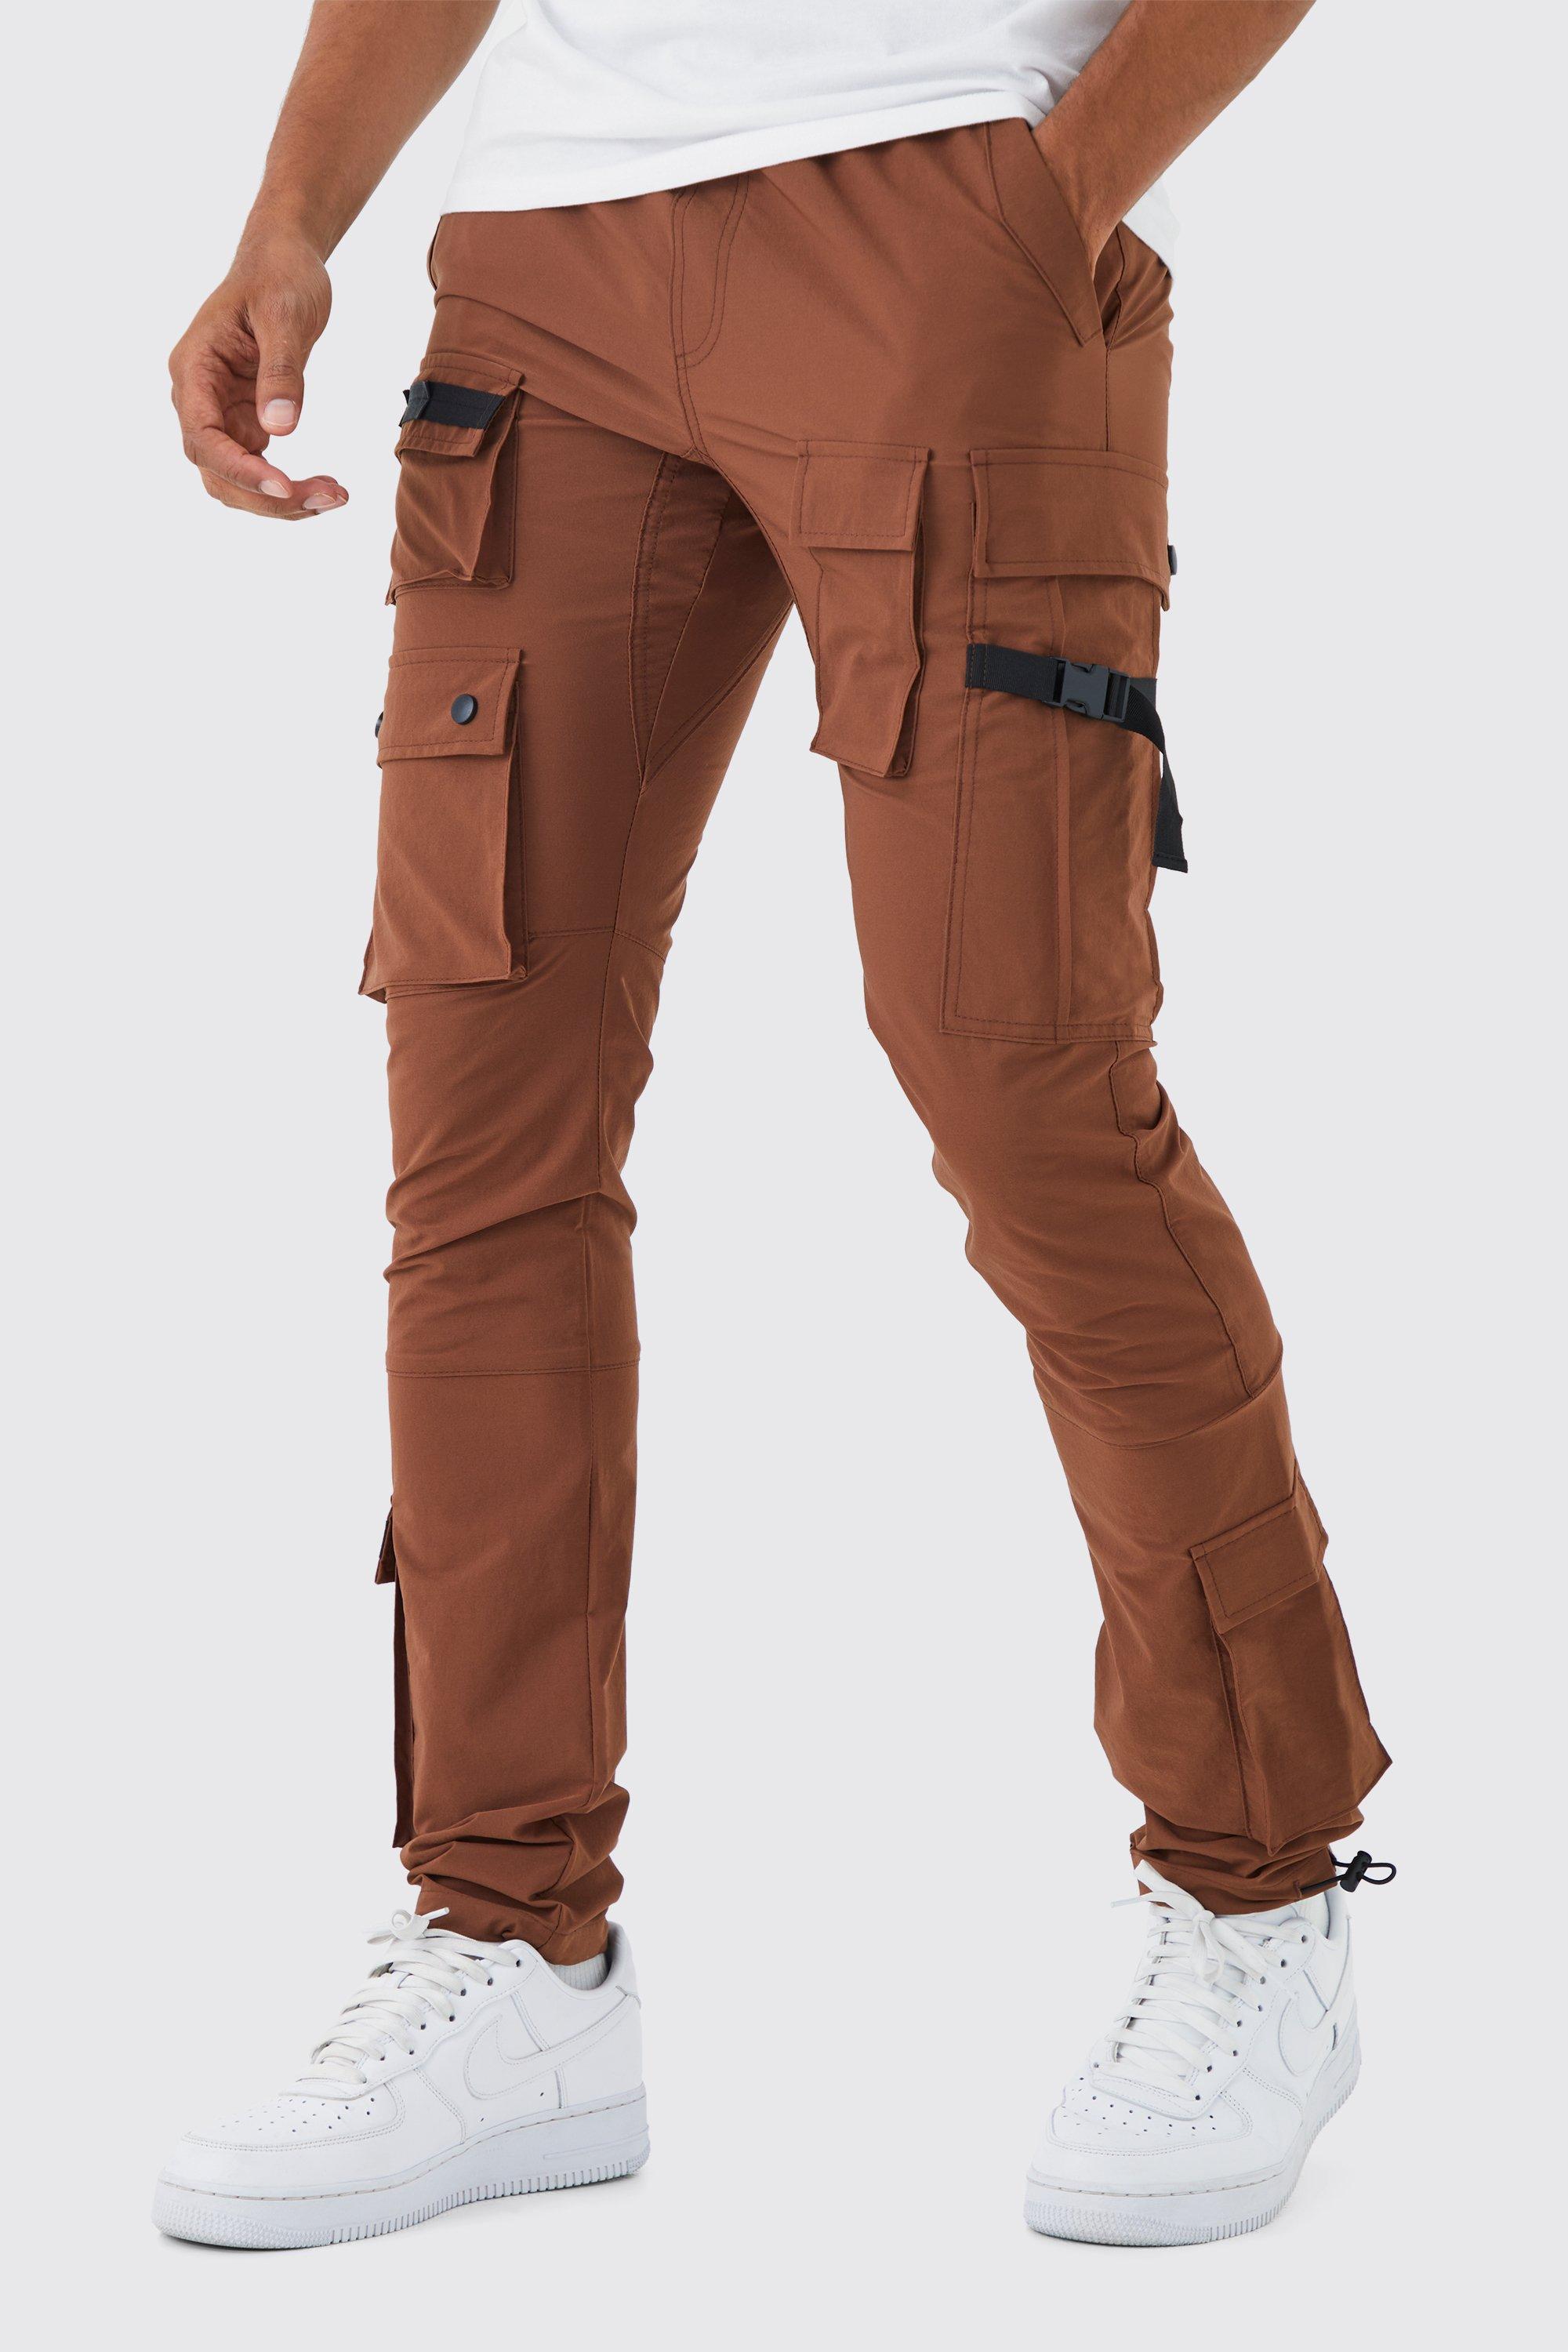 pantalon cargo ajusté à taille élastique homme - marron - l, marron